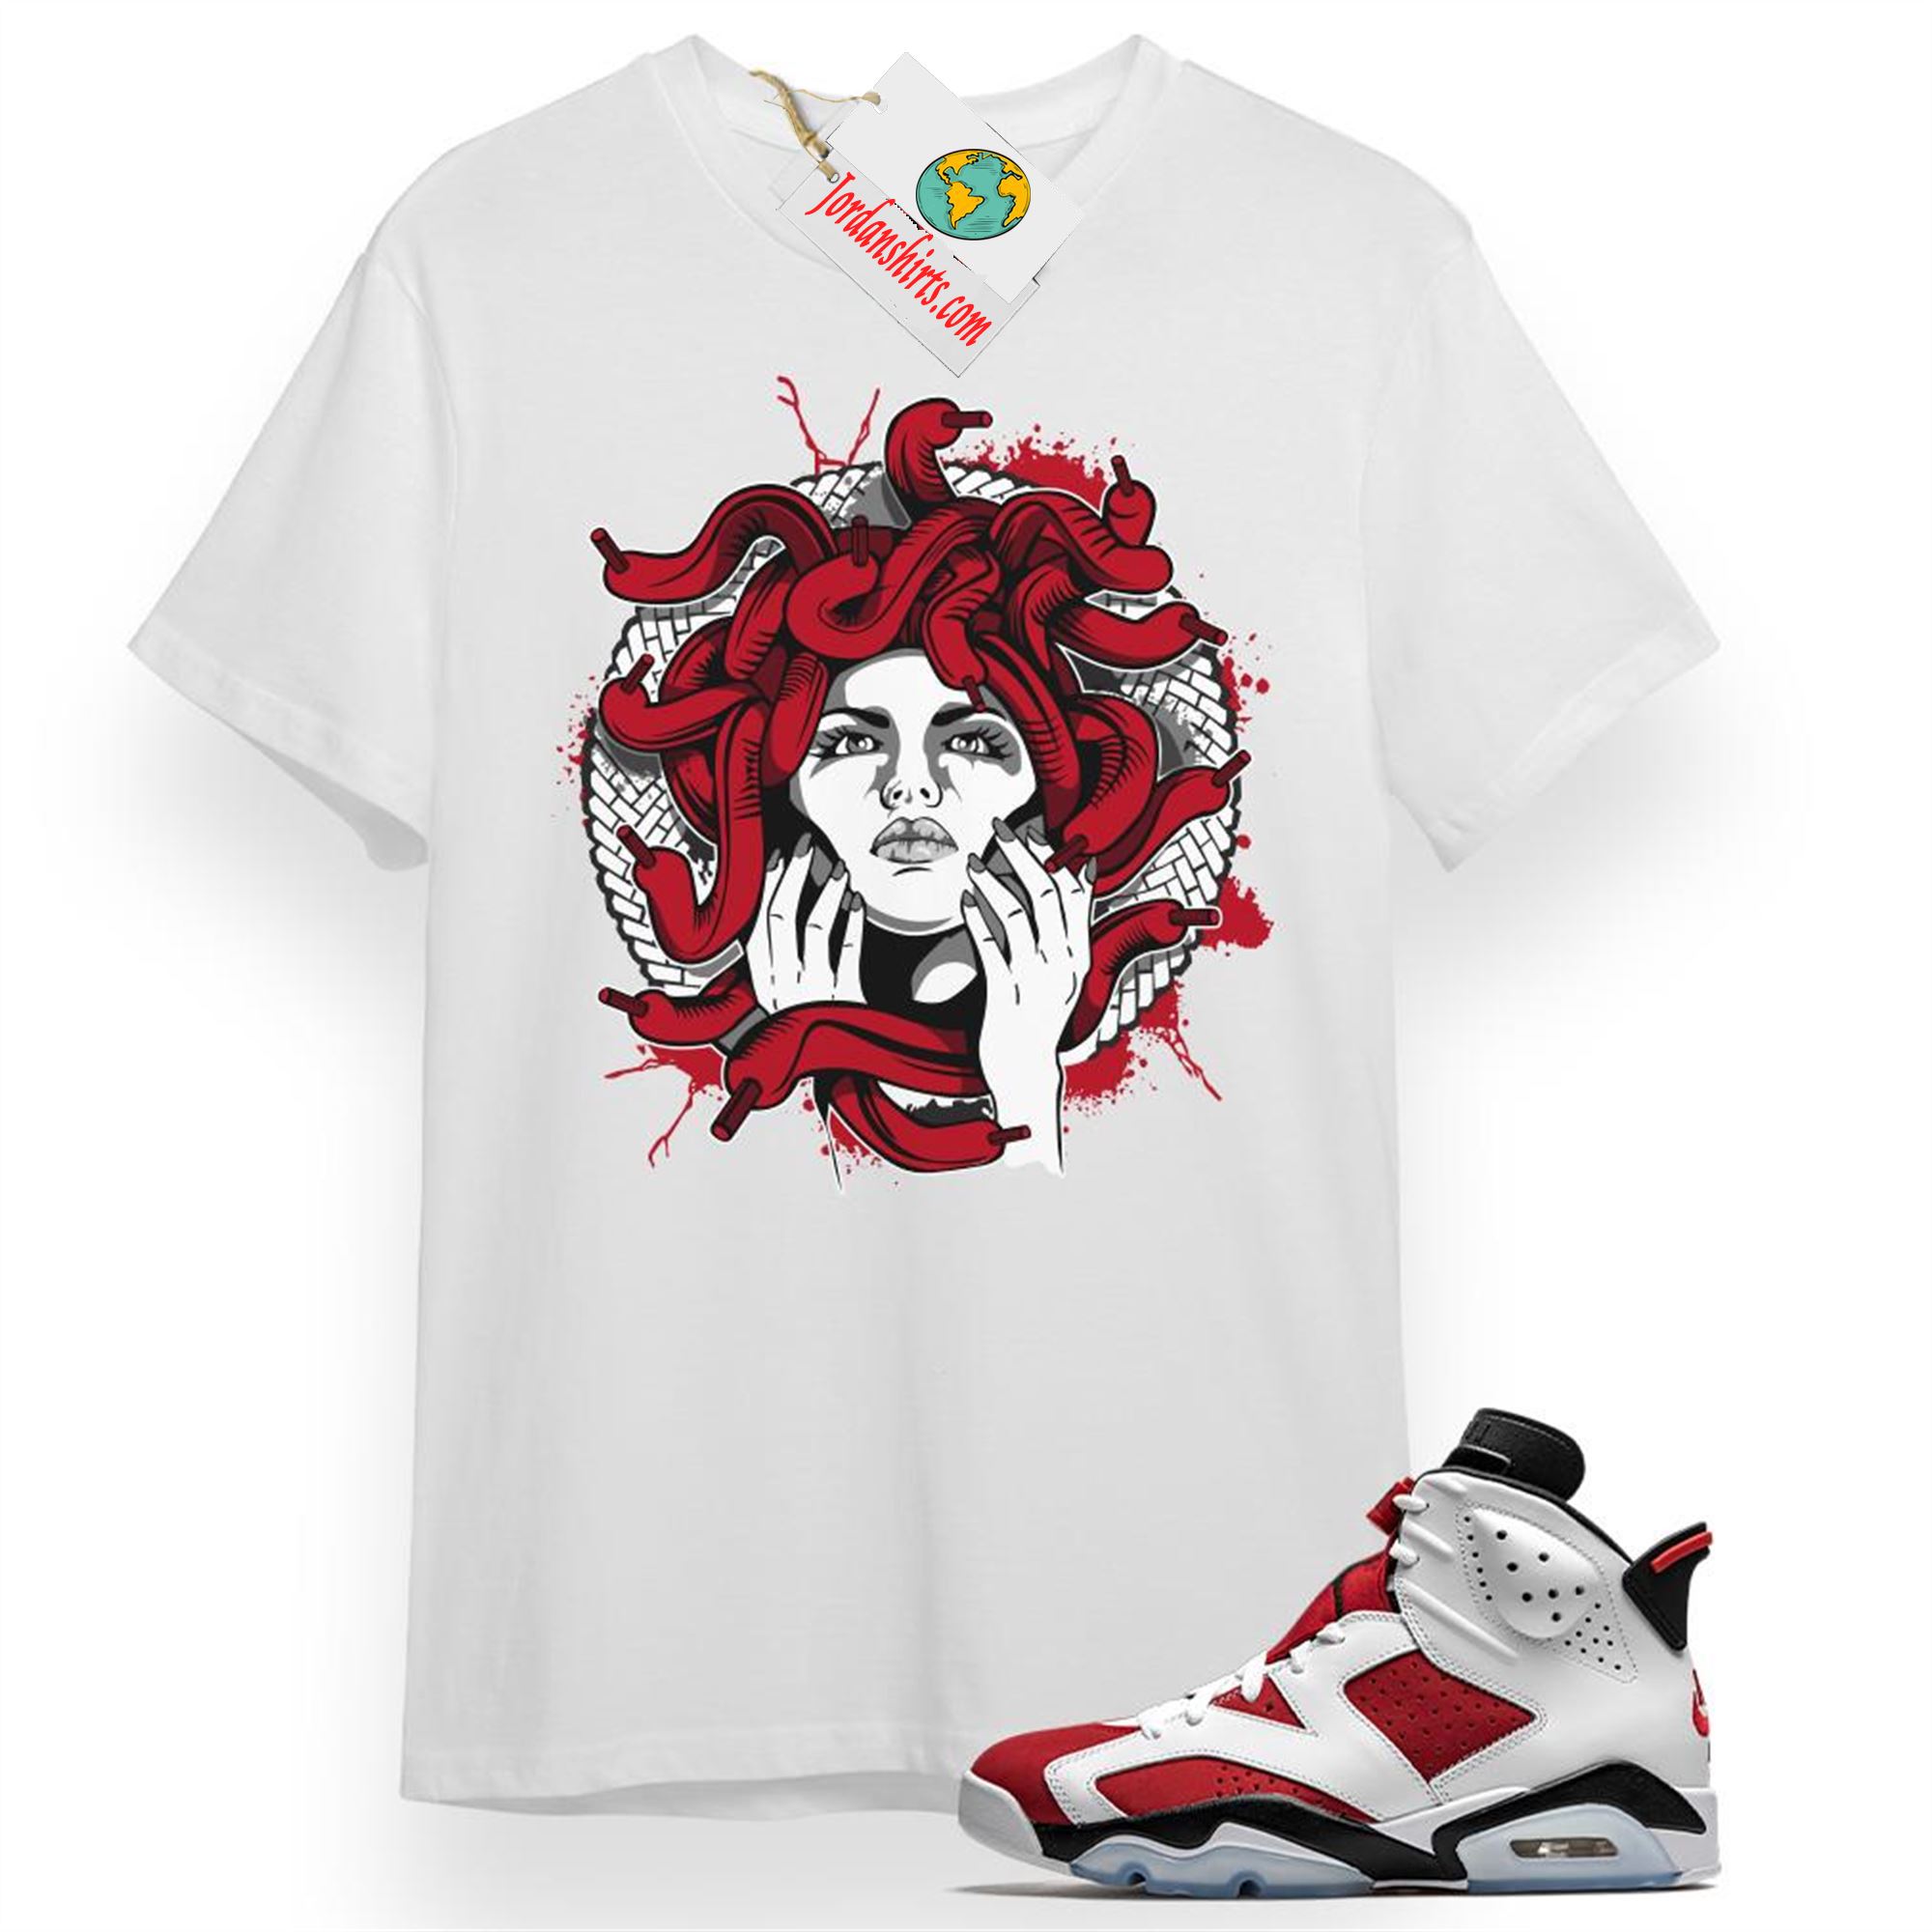 Jordan 6 Shirt, Medusa White T-shirt Air Jordan 6 Carmine 6s Size Up To 5xl